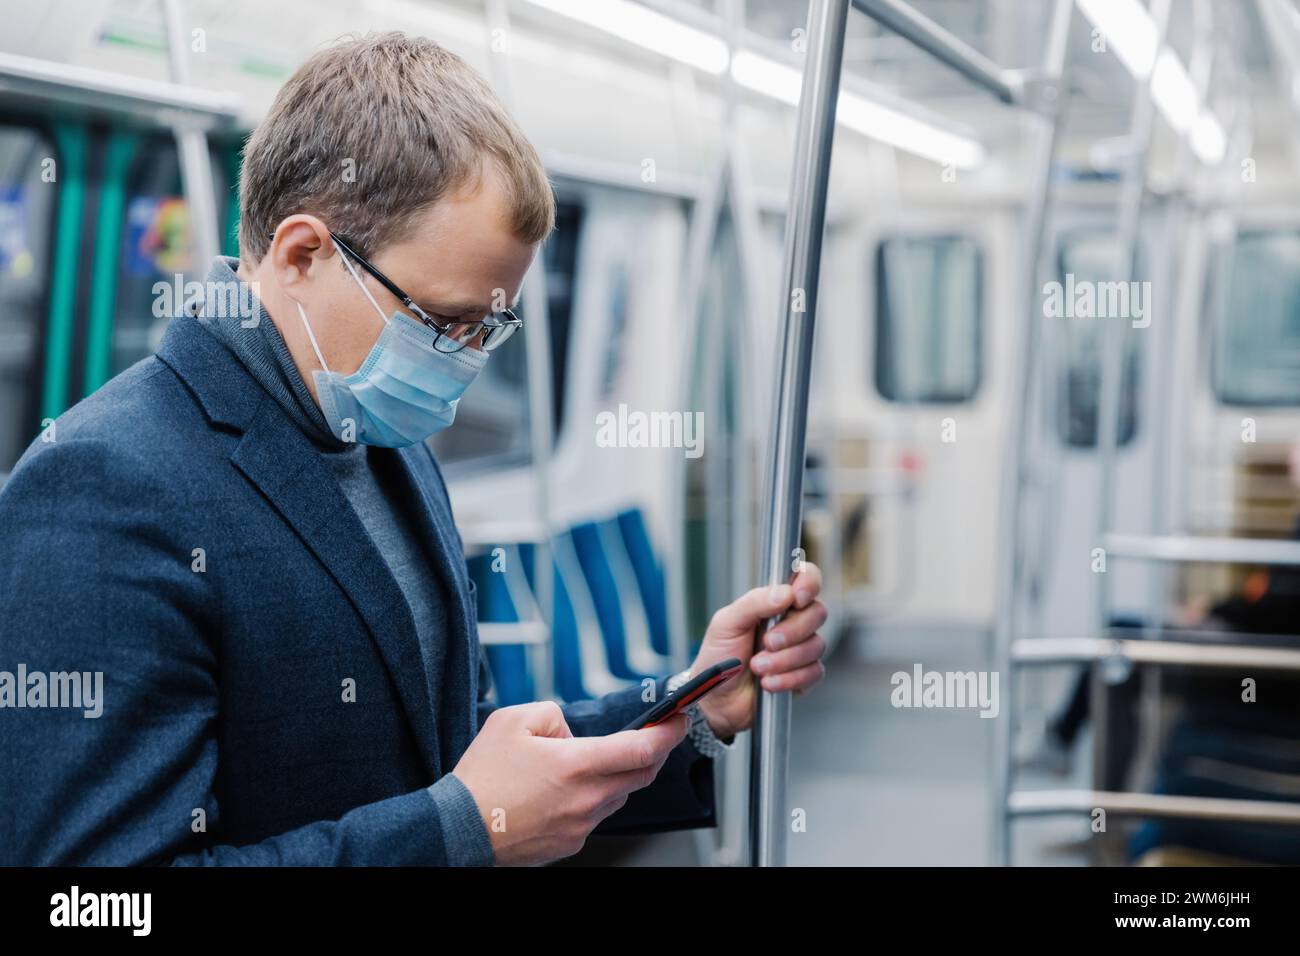 Maskierter Pendler in der U-Bahn mit Smartphone, vom Bildschirm absorbiert. Stockfoto